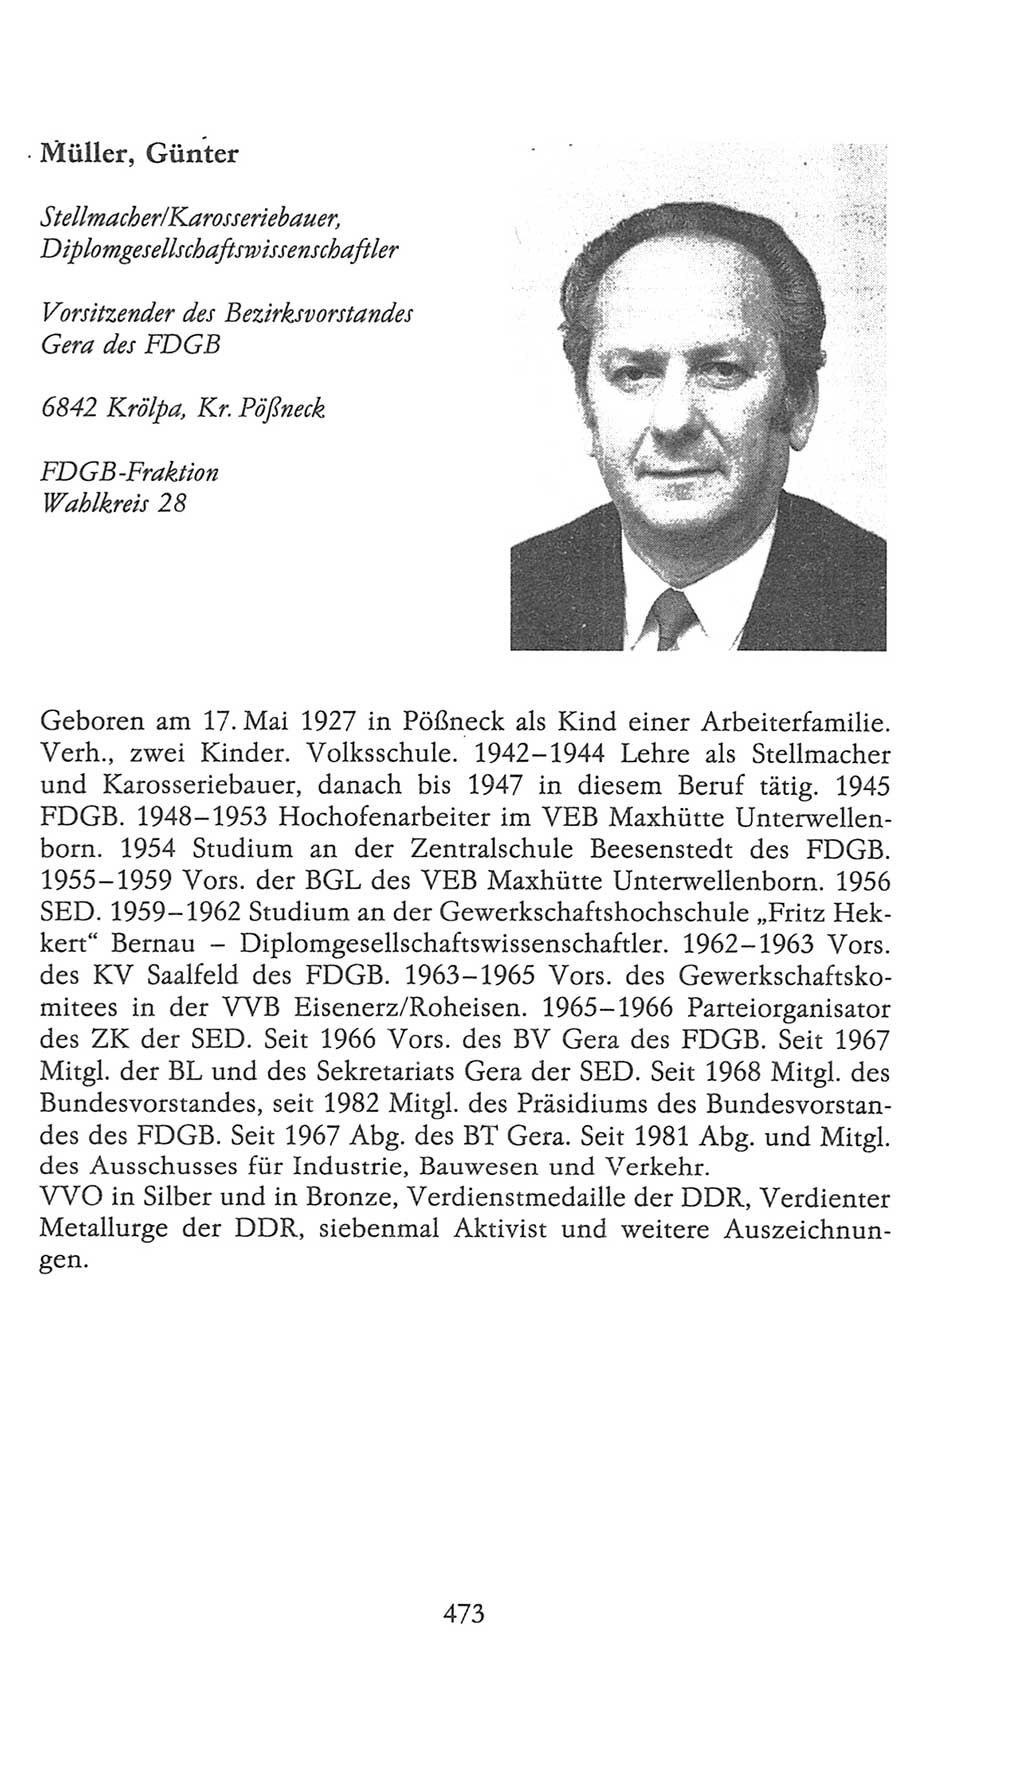 Volkskammer (VK) der Deutschen Demokratischen Republik (DDR), 9. Wahlperiode 1986-1990, Seite 473 (VK. DDR 9. WP. 1986-1990, S. 473)